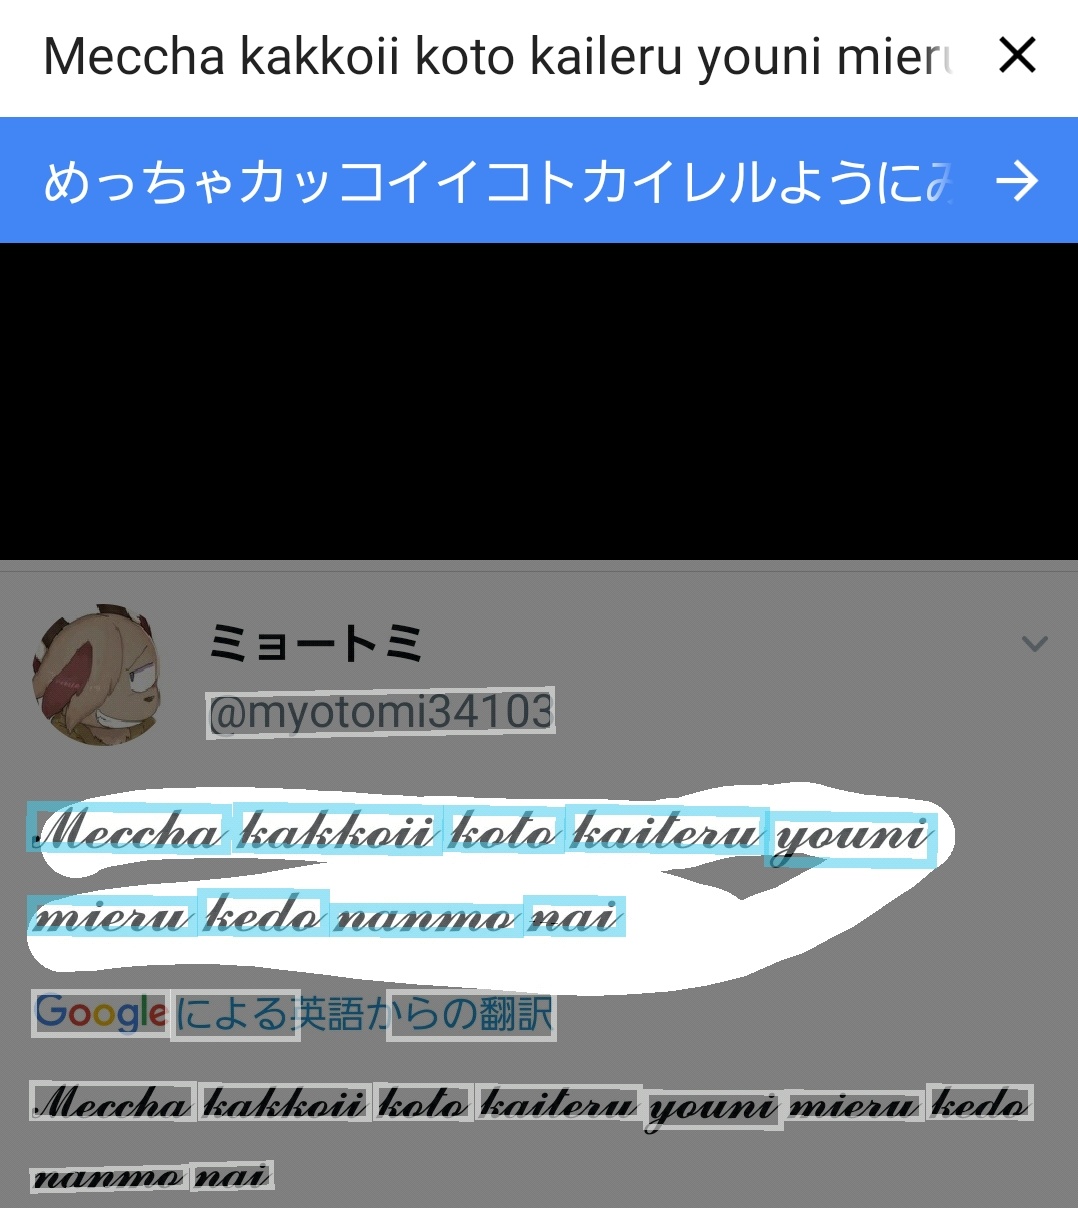 龍尾 Myotomi 格言もどきｗｗｗ アプリで英語から日本語で翻訳かけたら 少し変ですけどカタカナ混じりで翻訳出来ましたｗｗｗ T Co Lvnww3brew Twitter